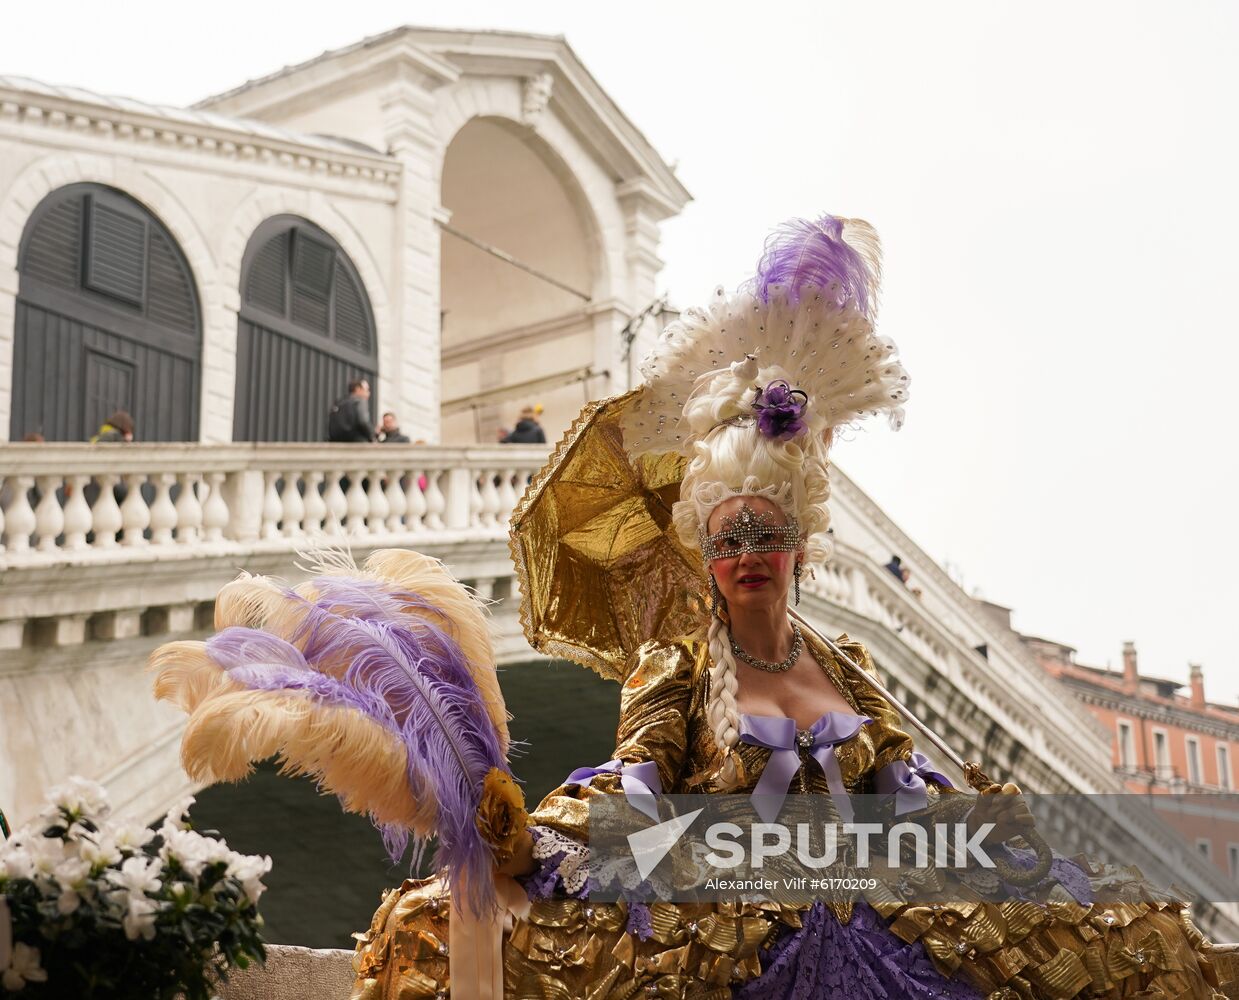 Italy Venice Carnival